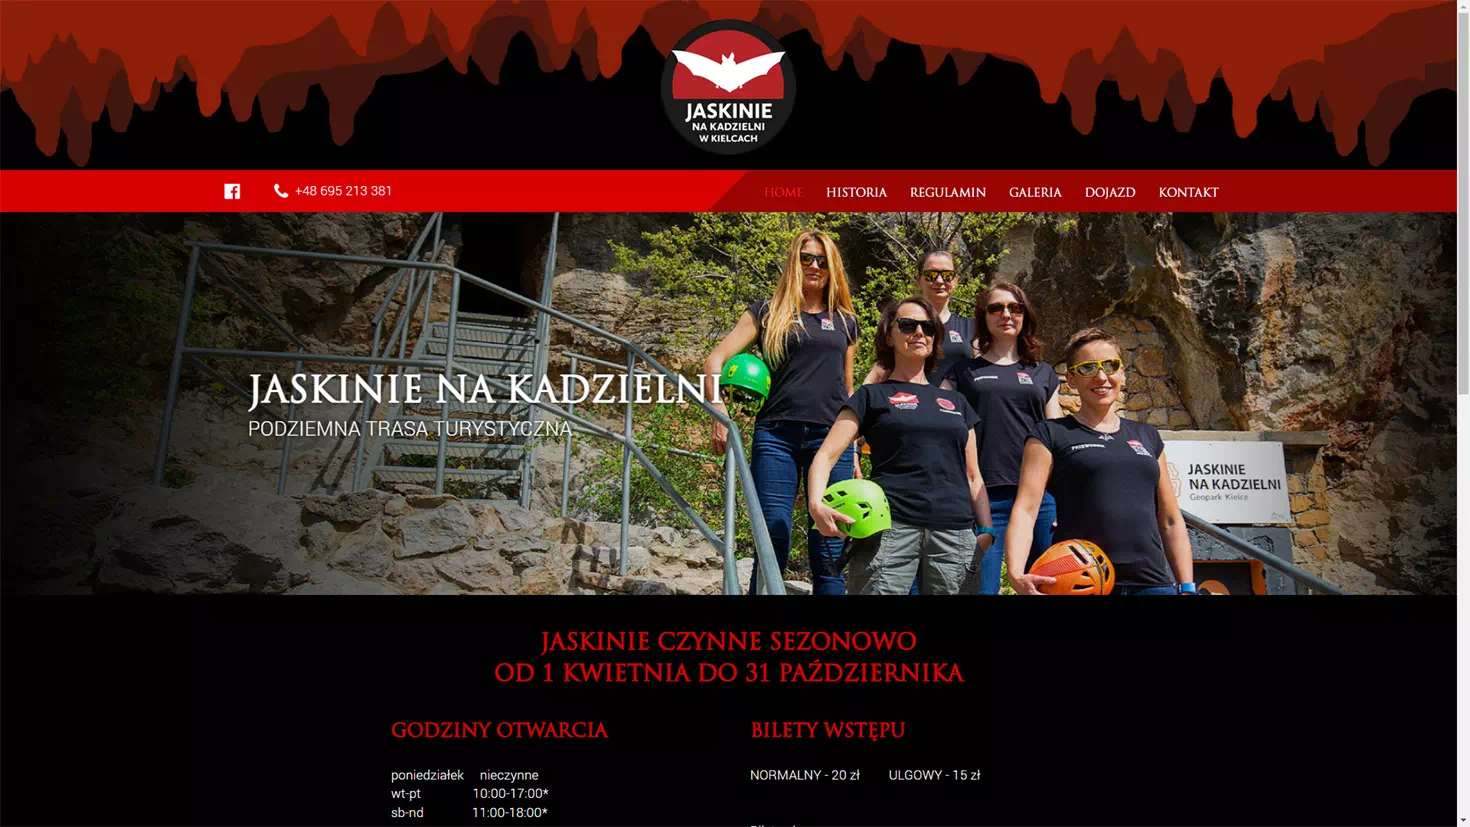 Realizacja www.jaskinienakadzielni.pl